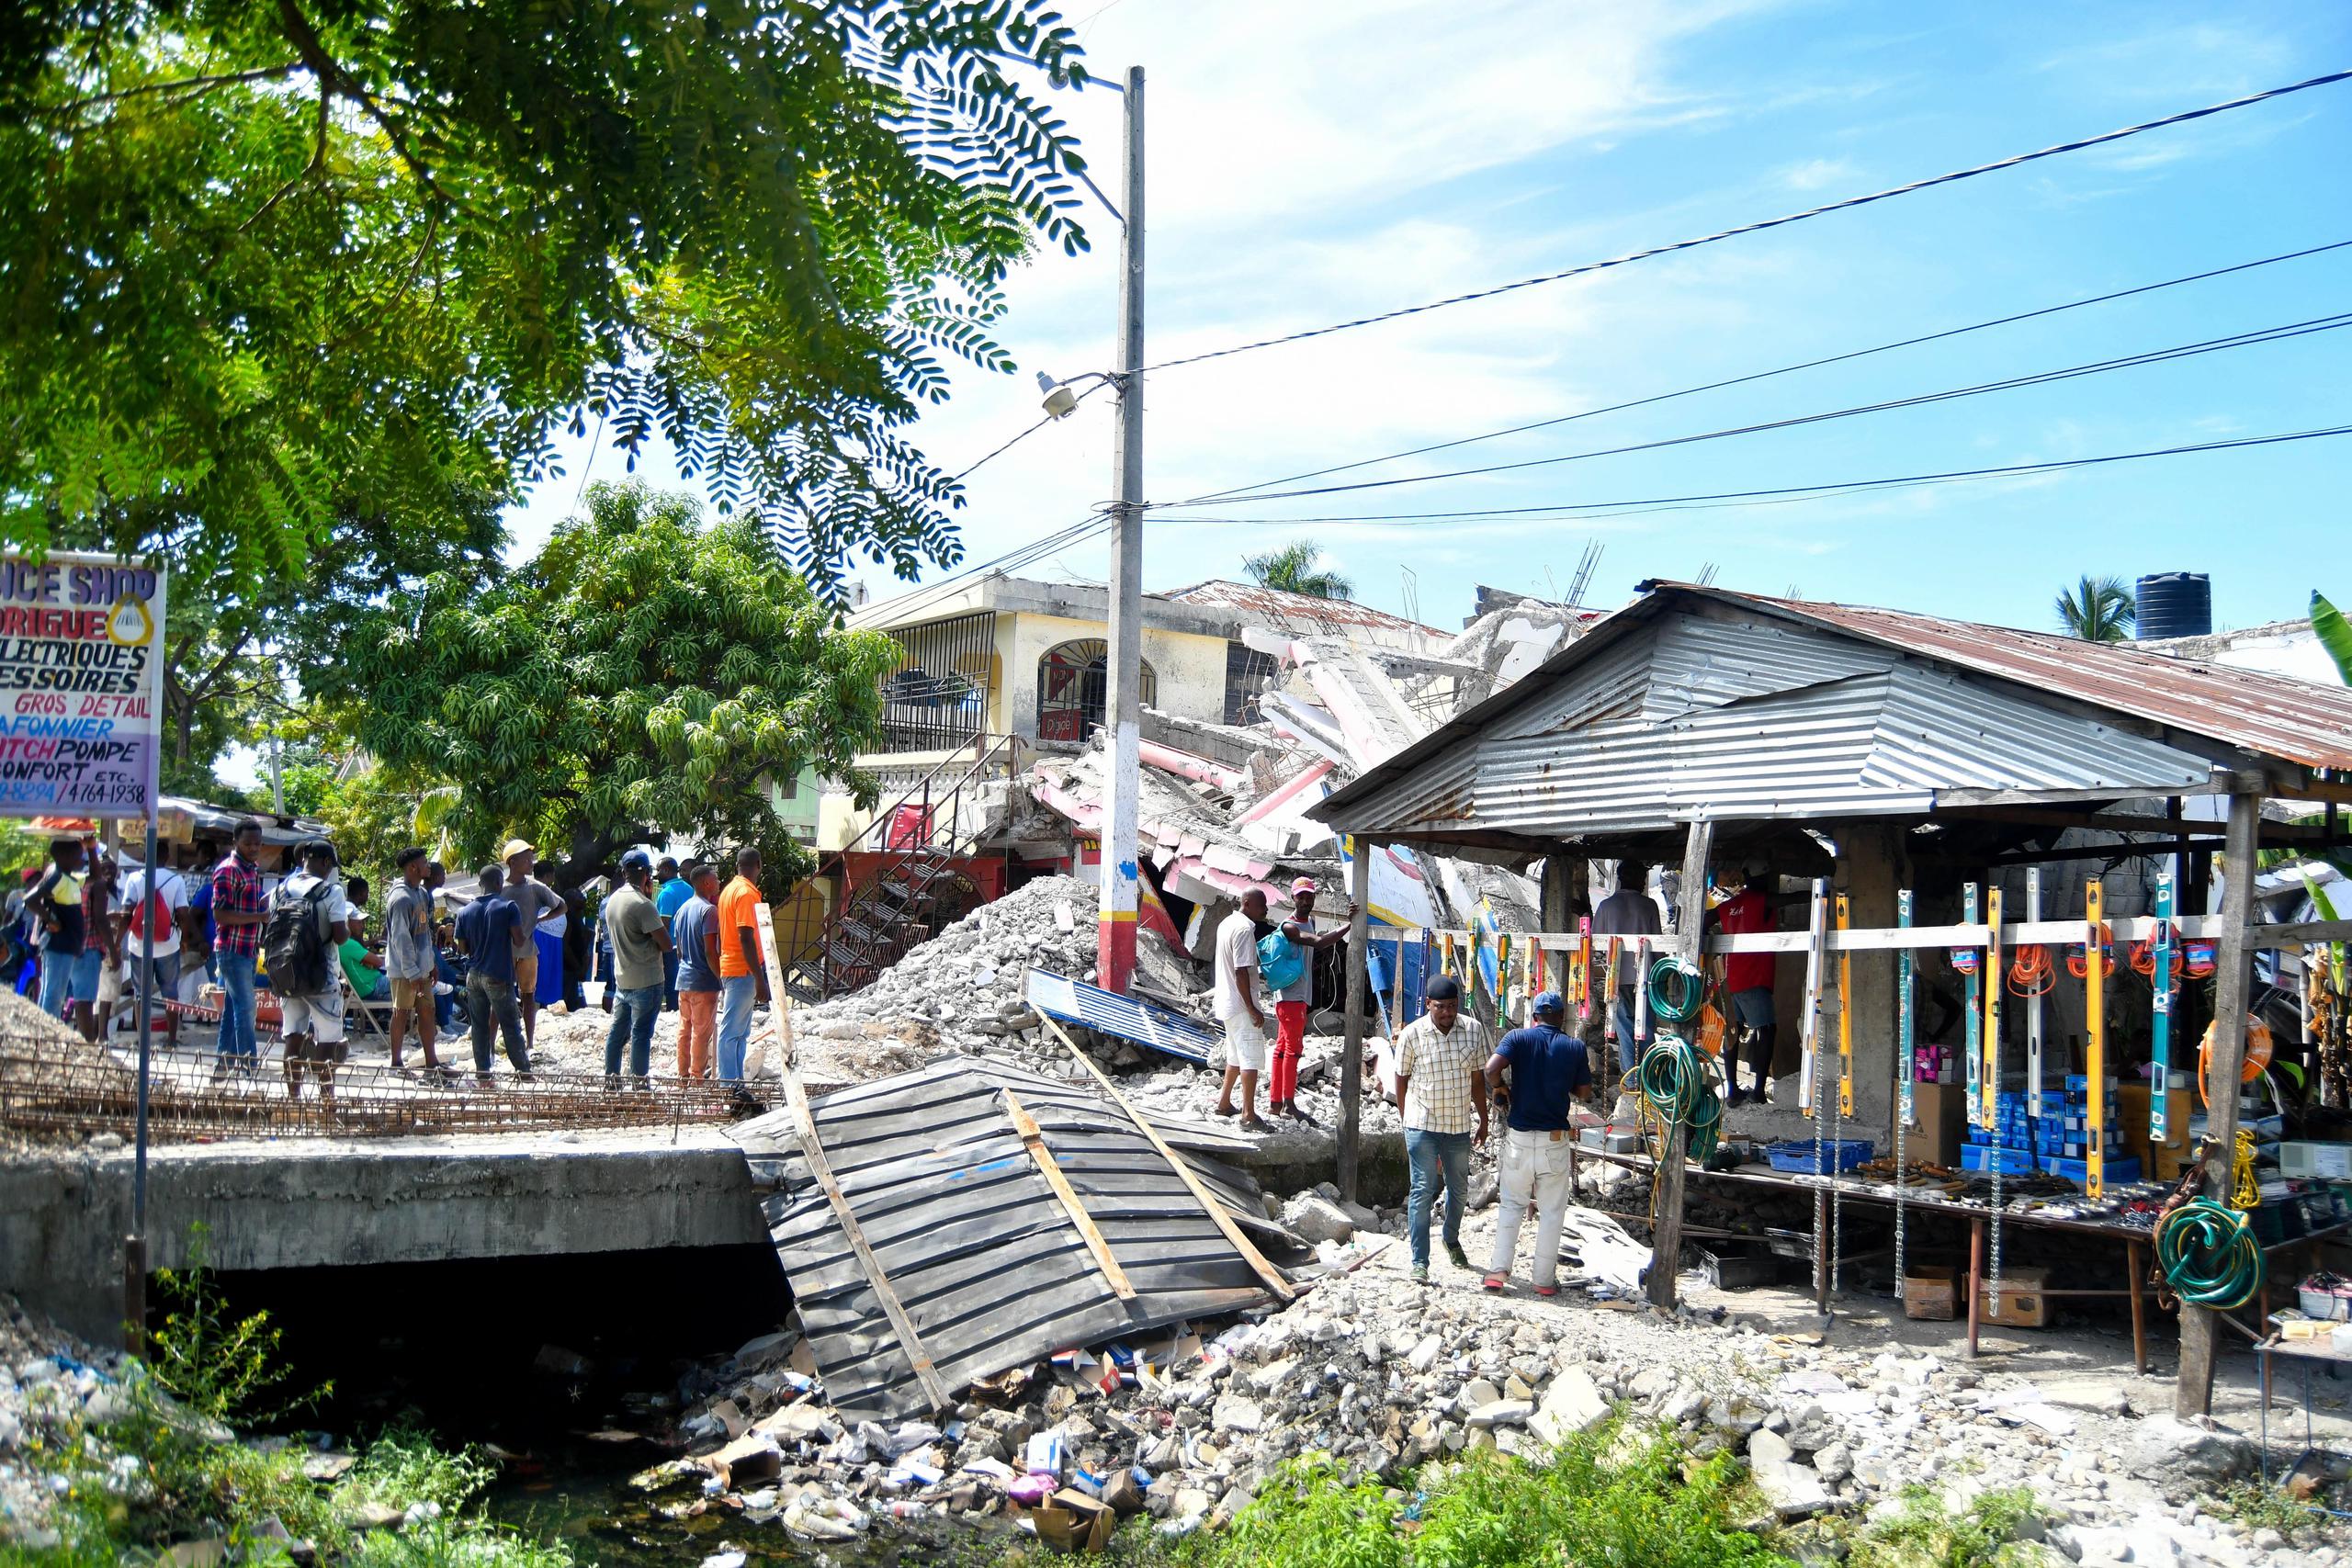 El primer ministro de Haití, Ariel Henry, afirmó este martes que “ha llegado el momento de la recuperación y la reconstrucción” y prometió que “nada ni nadie” le distraerá de su voluntad de atender a los necesitados.